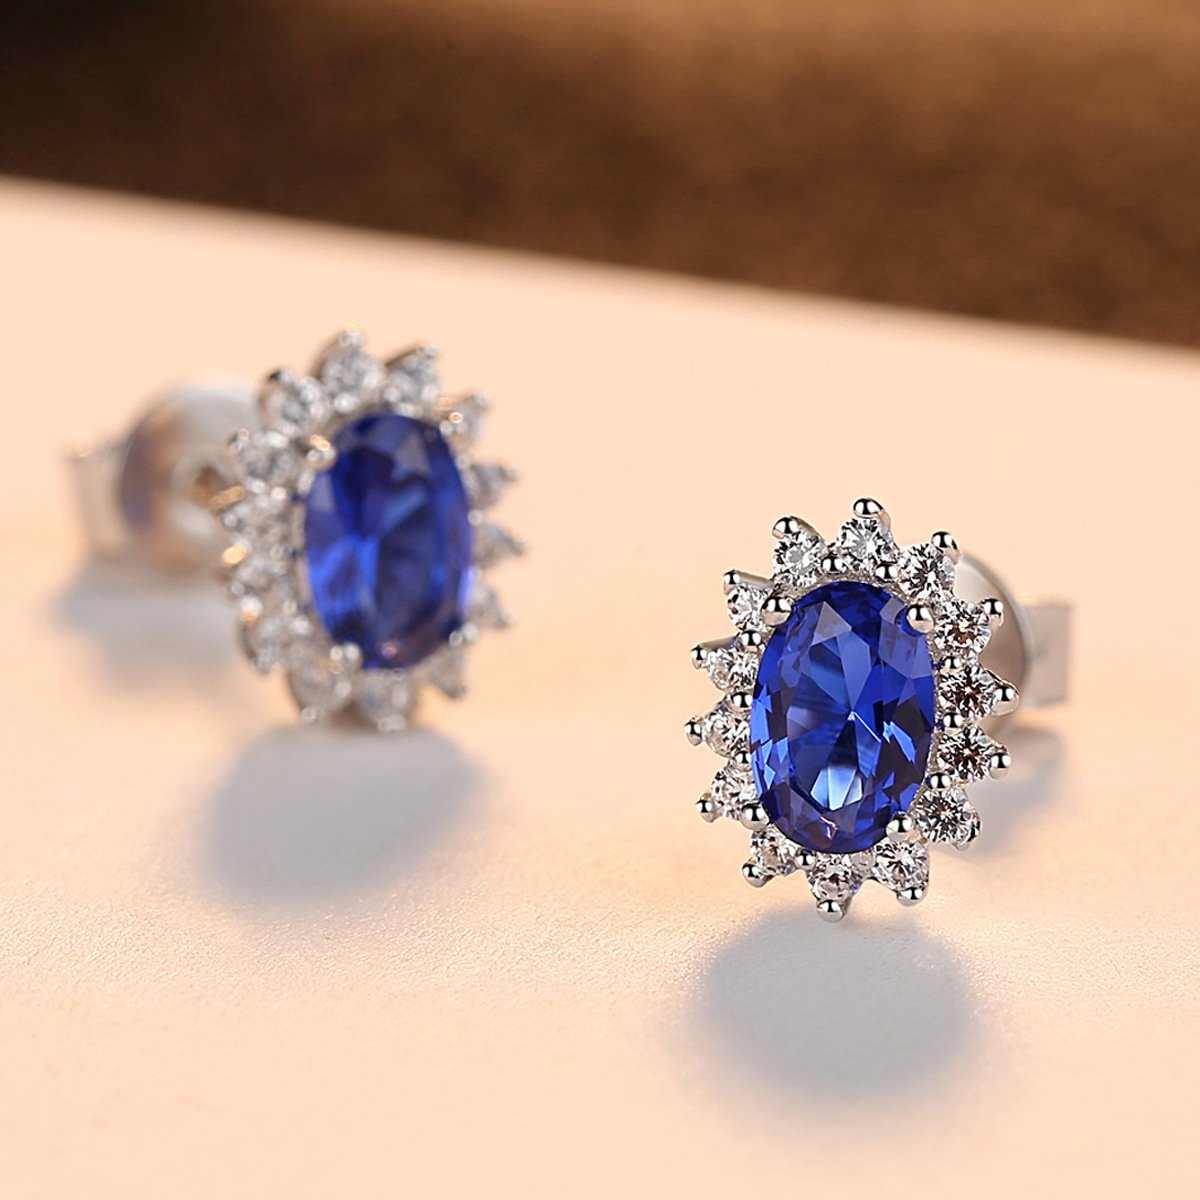 Blue Sapphire Stud Earrings - HERS